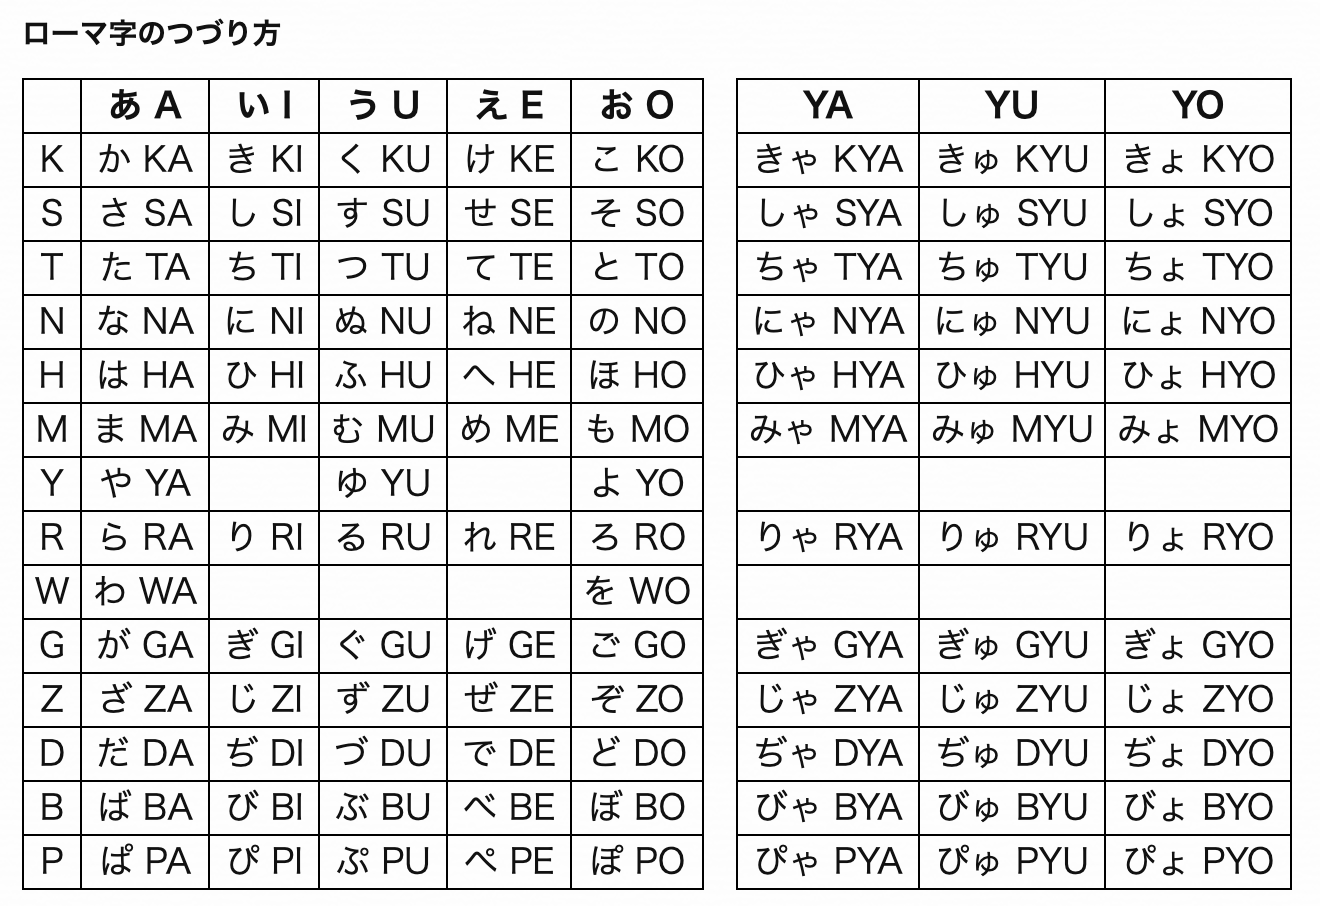 訓令式に準拠した 日本式ローマ字のづづり方 と差分でまとめた